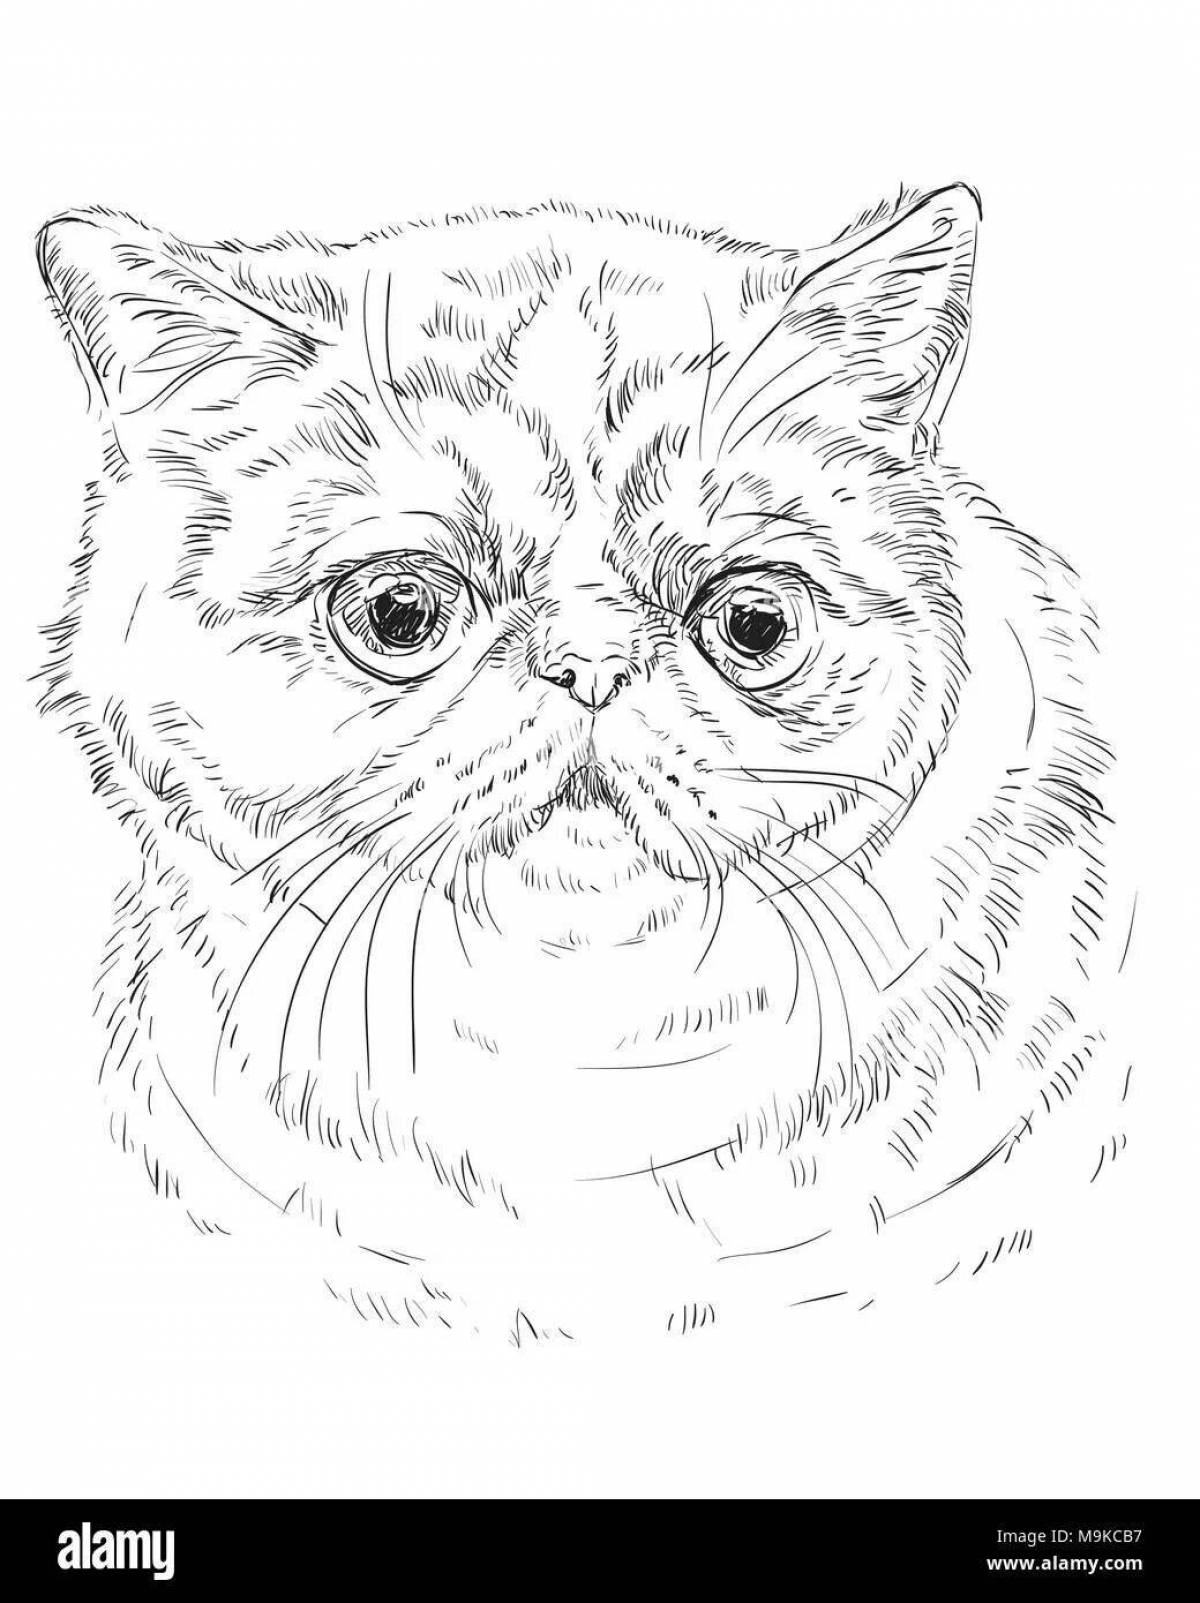 Раскраска милая британская короткошерстная кошка